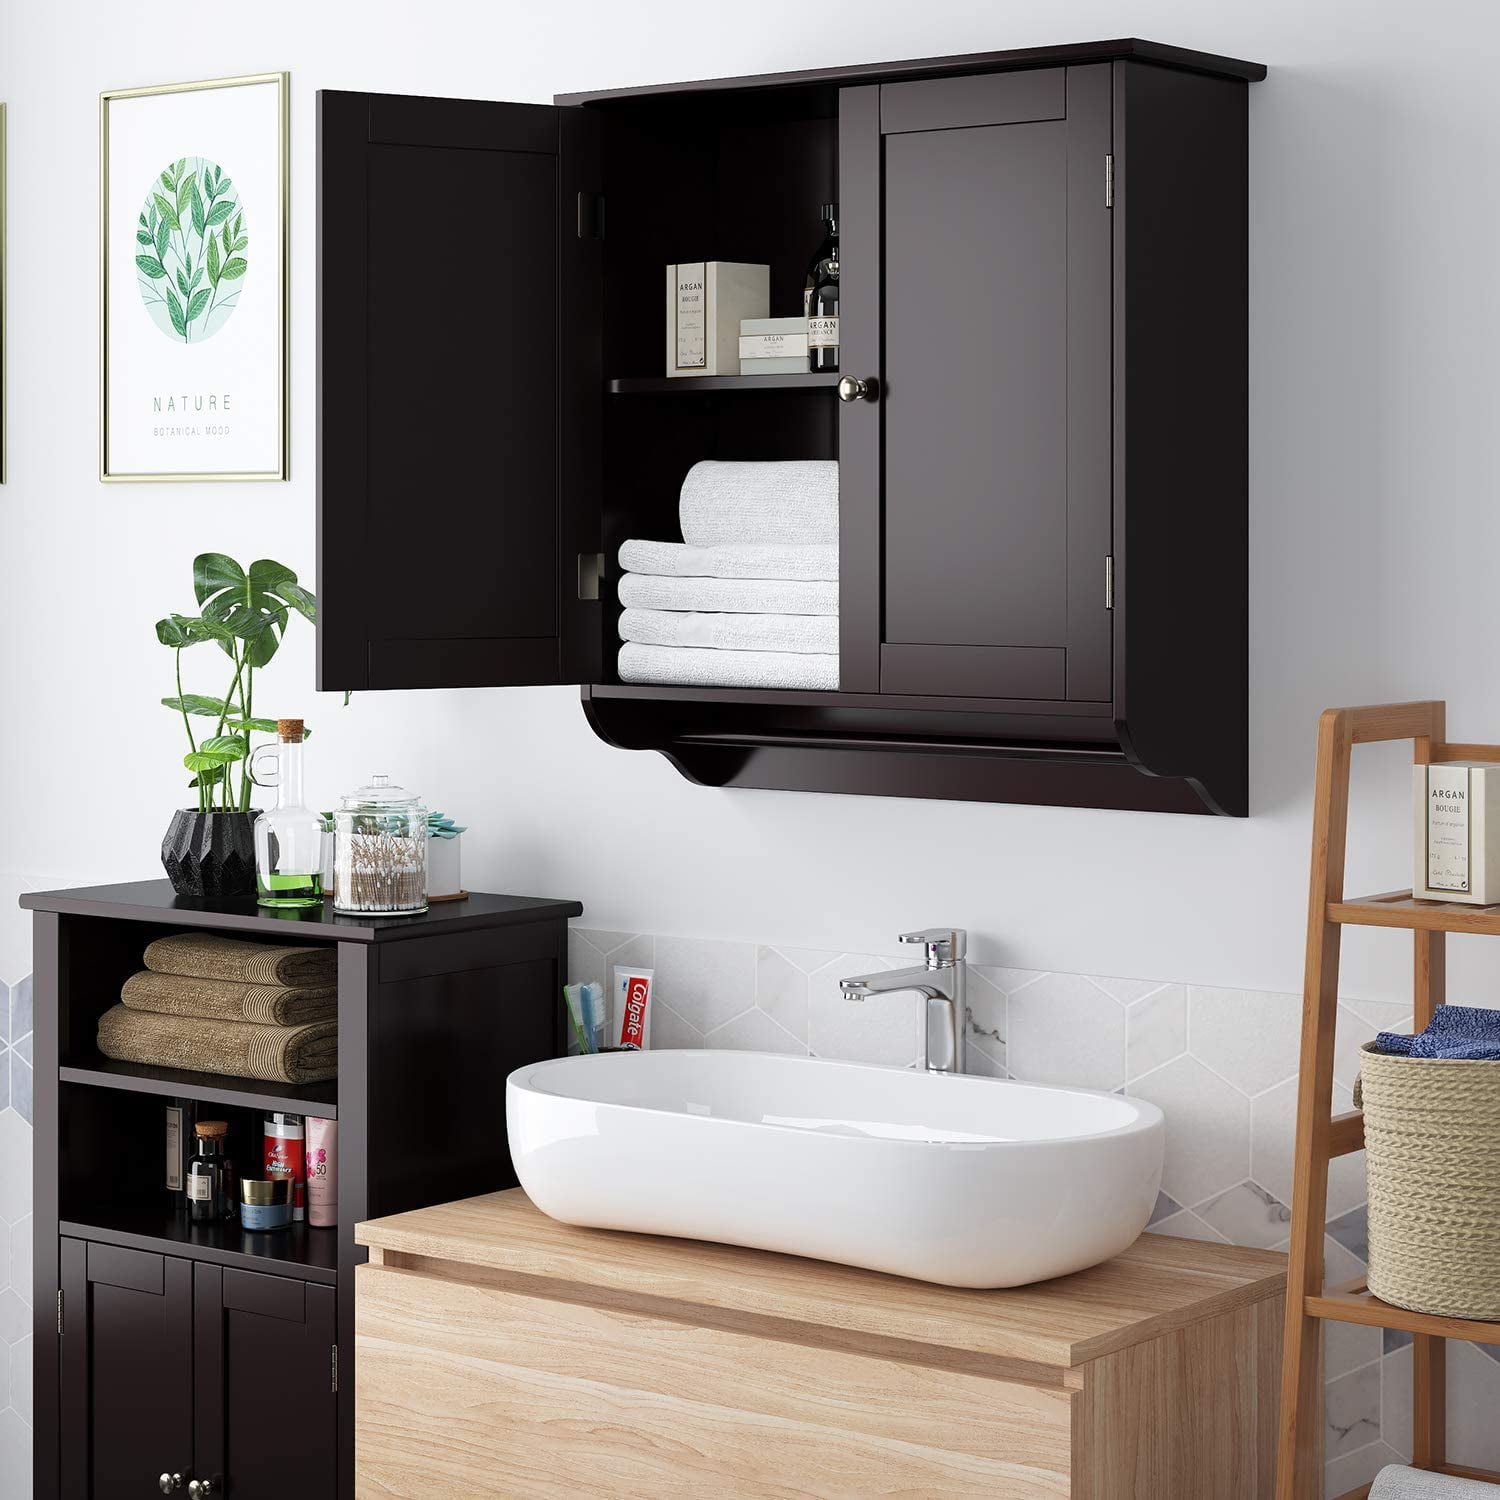 TaoHFE Black Bathroom Cabinet,Bathroom Wall Cabinet 2 Door Adjustable  Shelves,Over The Toilet Storage Cabinet,Black Bathroom Cabinet Wall